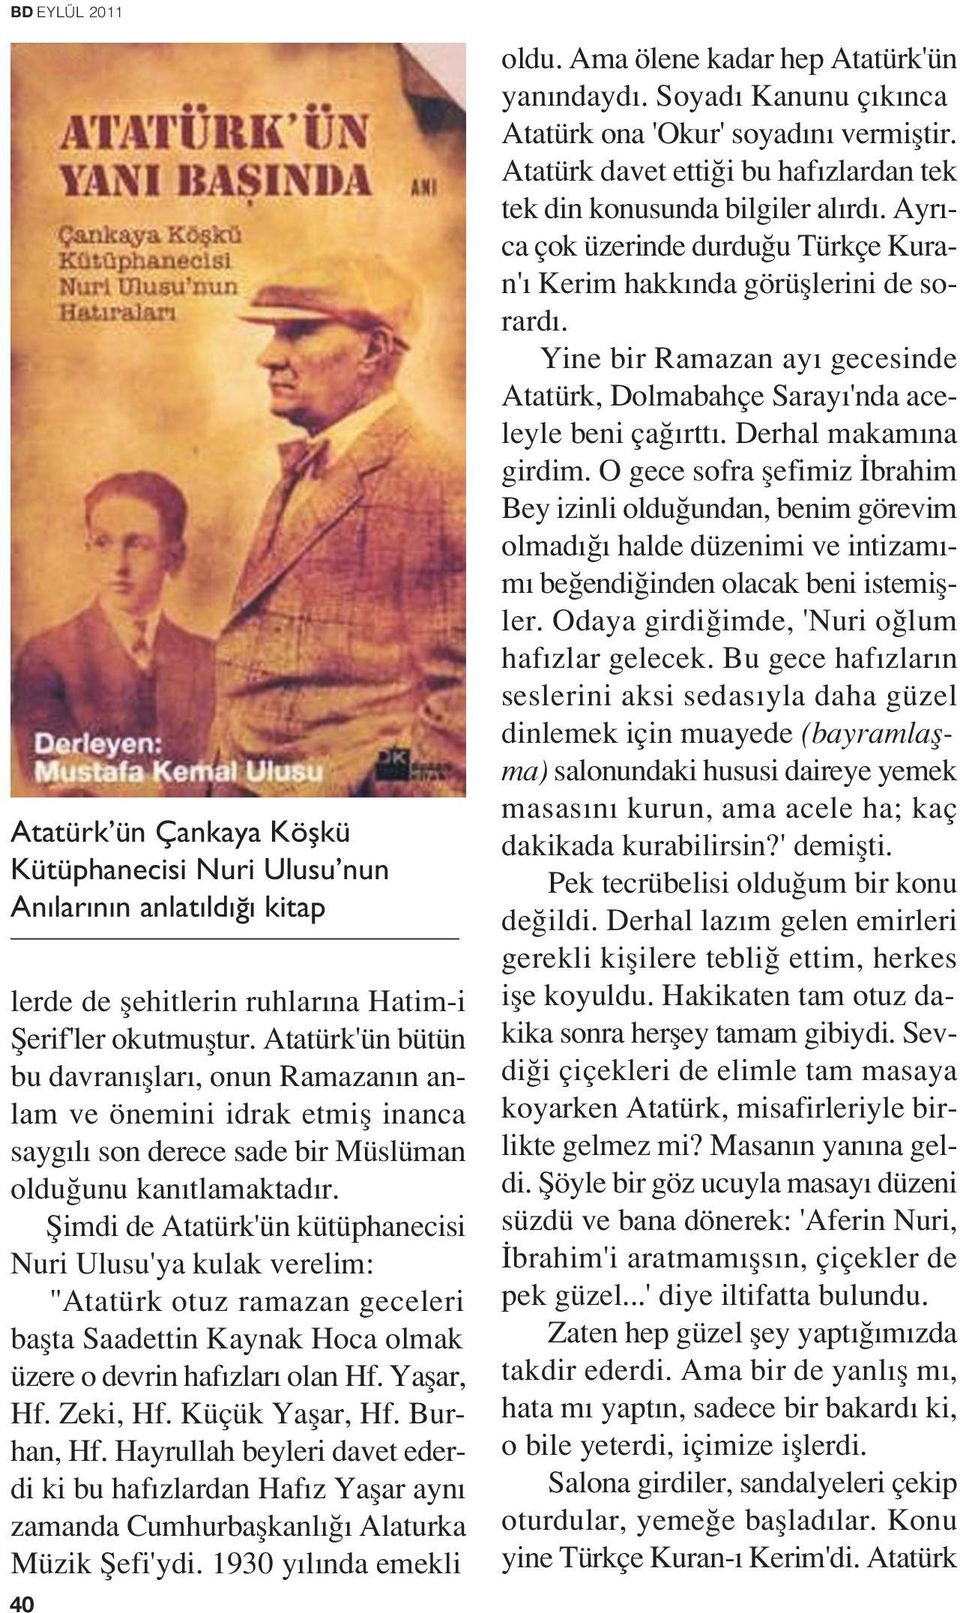 fiimdi de Atatürk'ün kütüphanecisi Nuri Ulusu'ya kulak verelim: "Atatürk otuz ramazan geceleri baflta Saadettin Kaynak Hoca olmak üzere o devrin haf zlar olan Hf. Yaflar, Hf. Zeki, Hf.